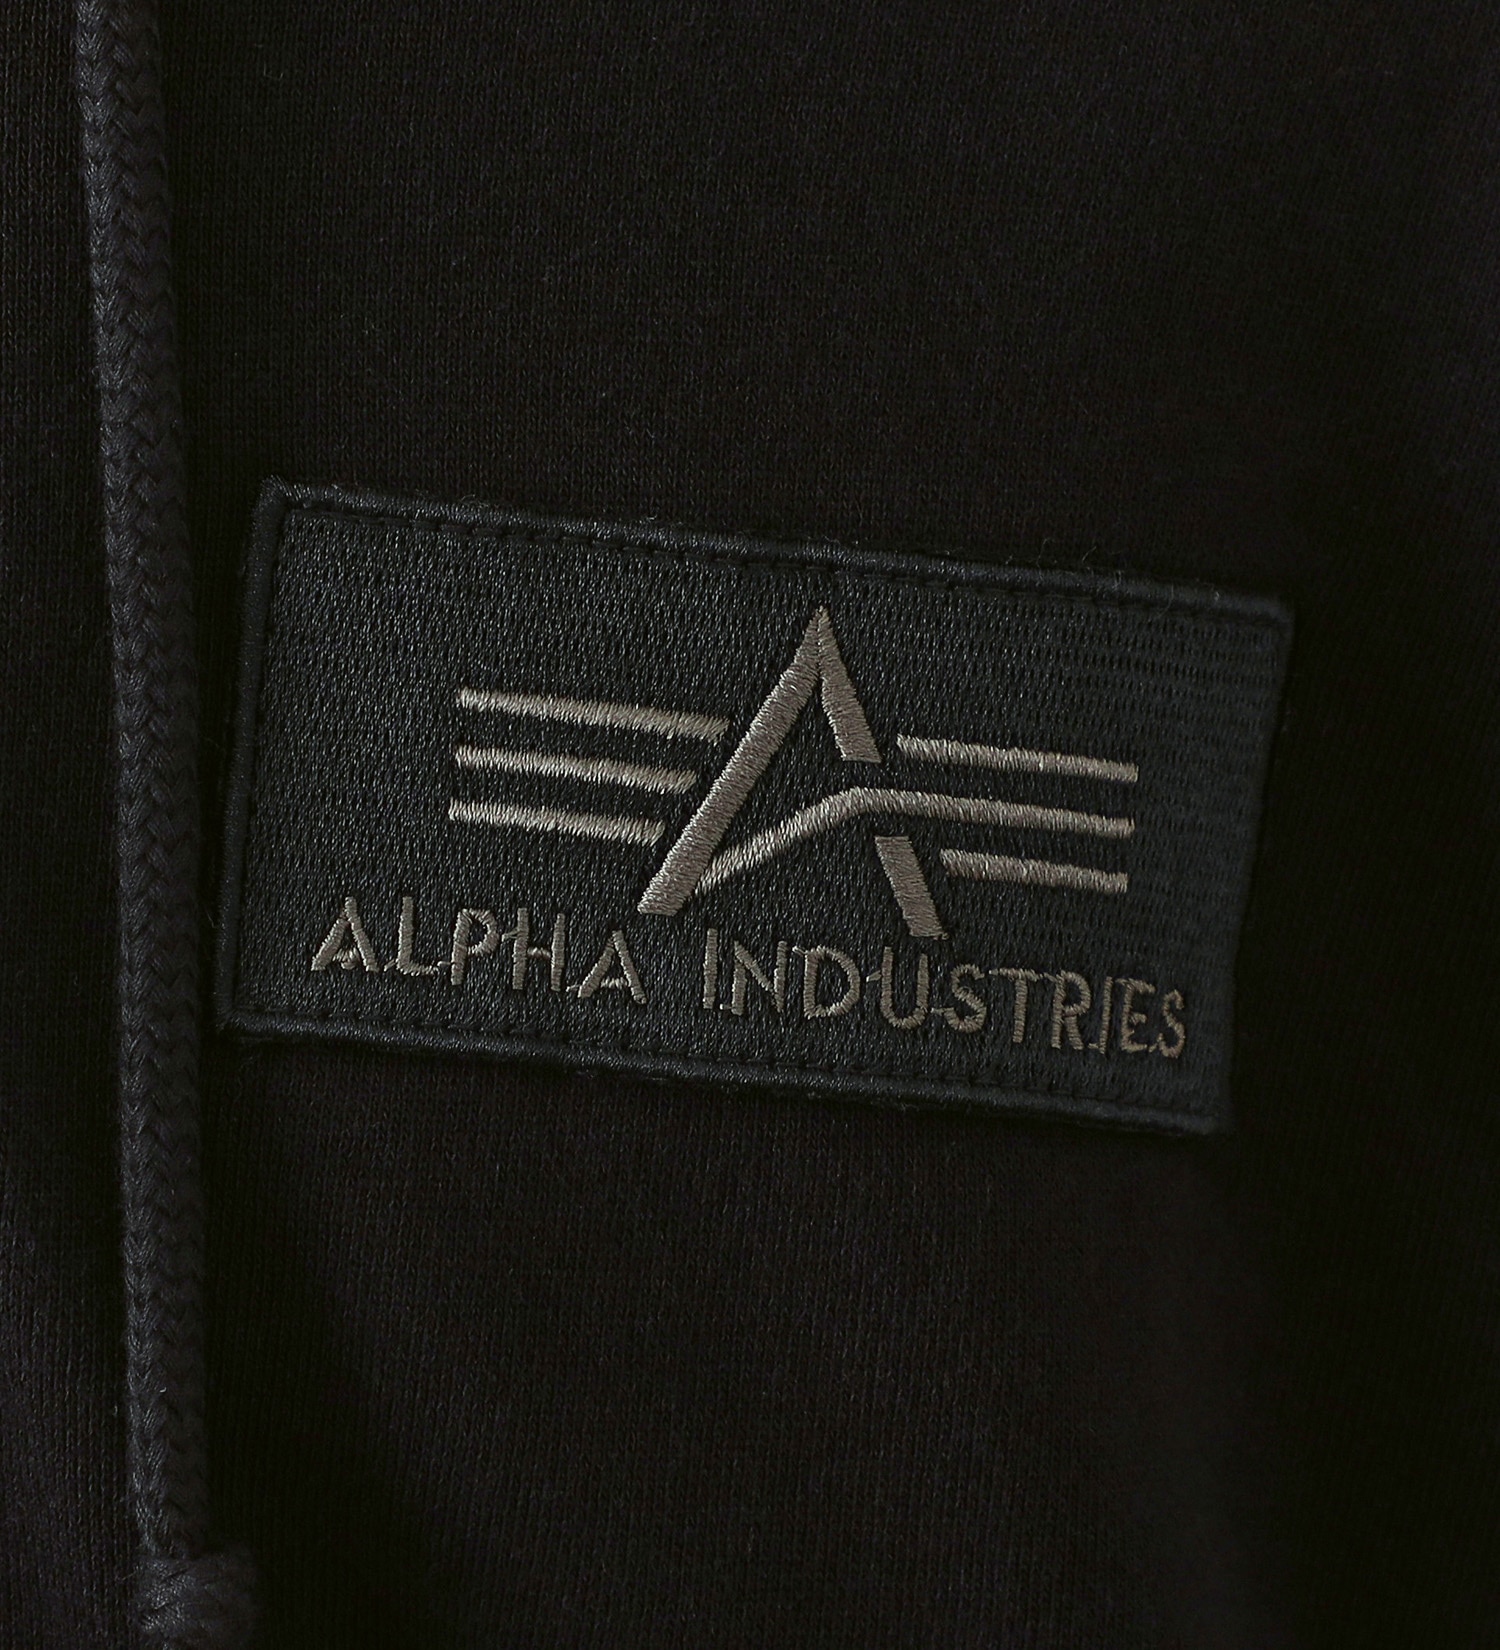 ALPHA(アルファ)のパッチドジップパーカー|トップス/パーカー/メンズ|ブラック